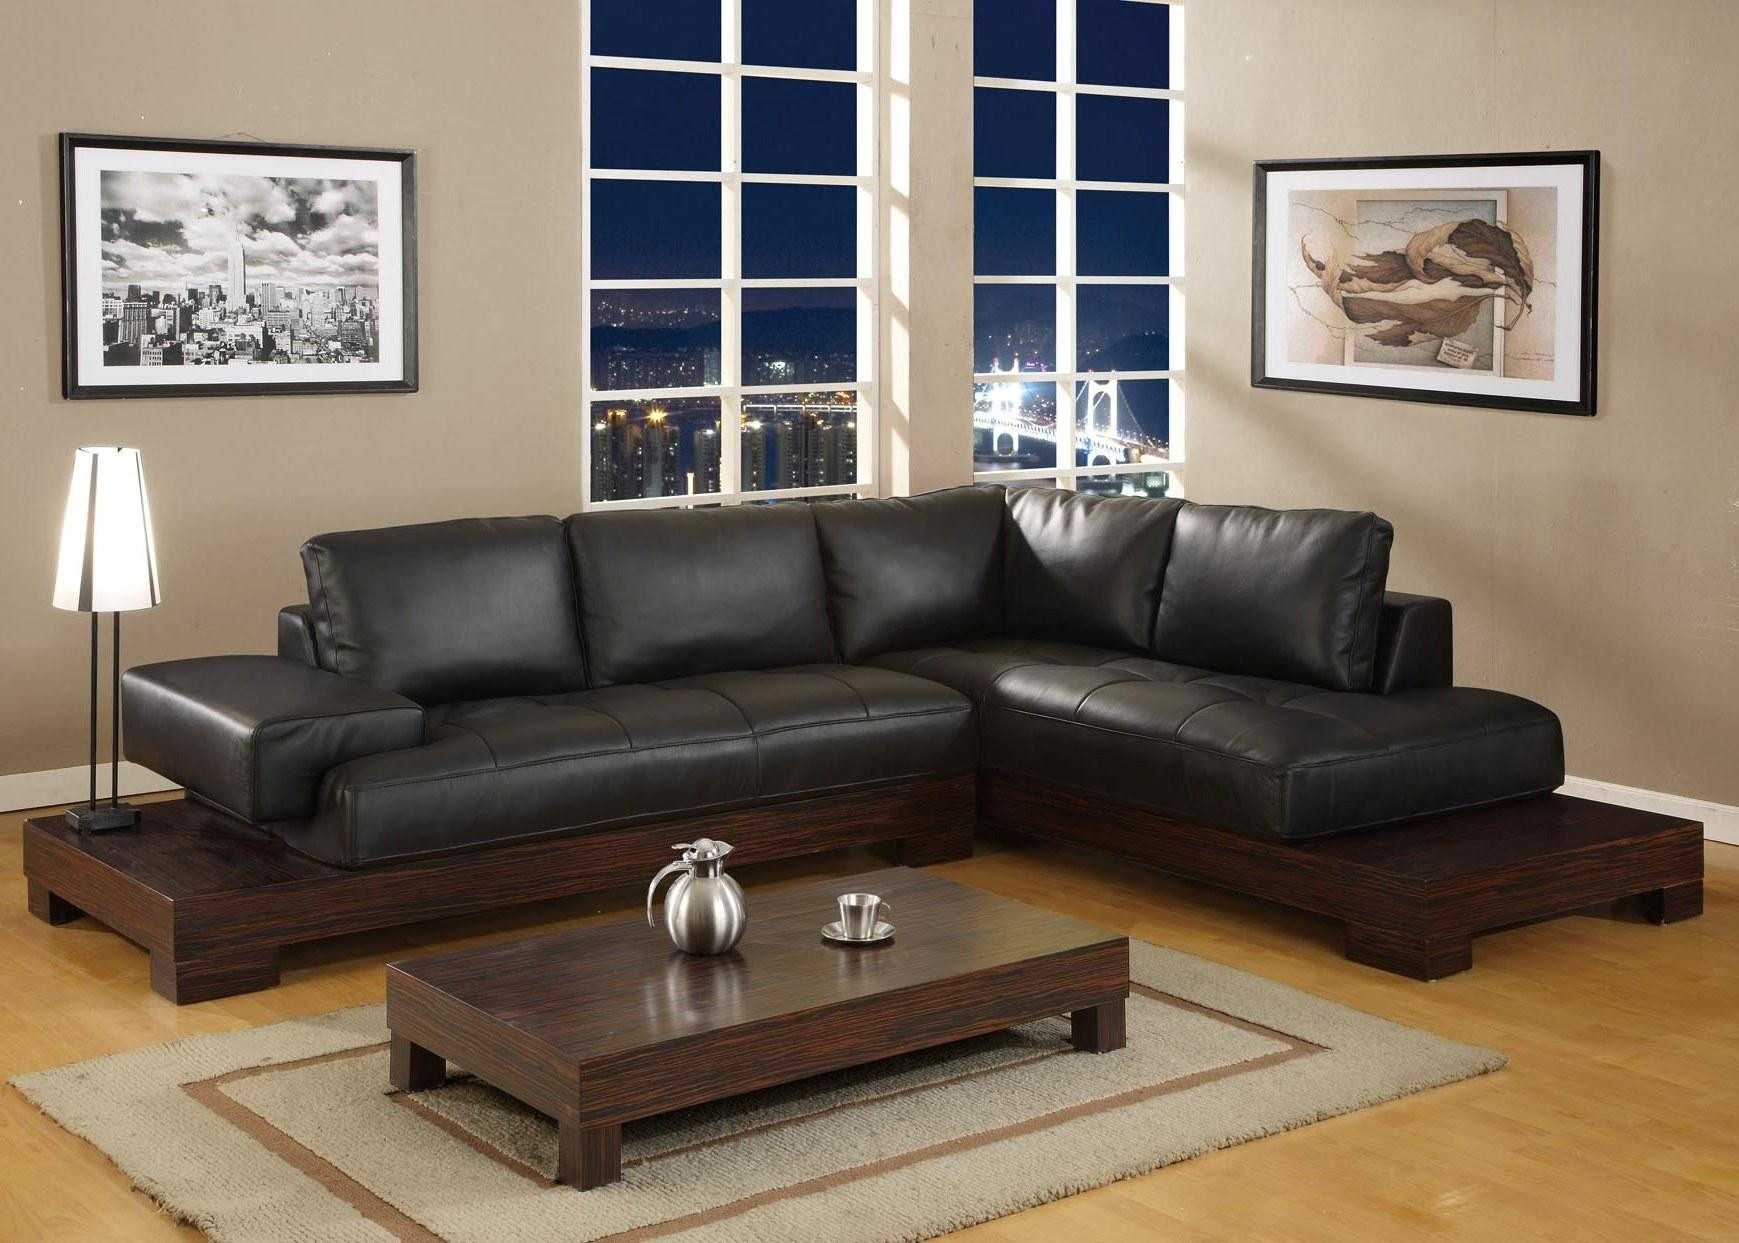 Black Furniture Living Room Ideas
 Black Furniture Living Room Ideas – HomesFeed